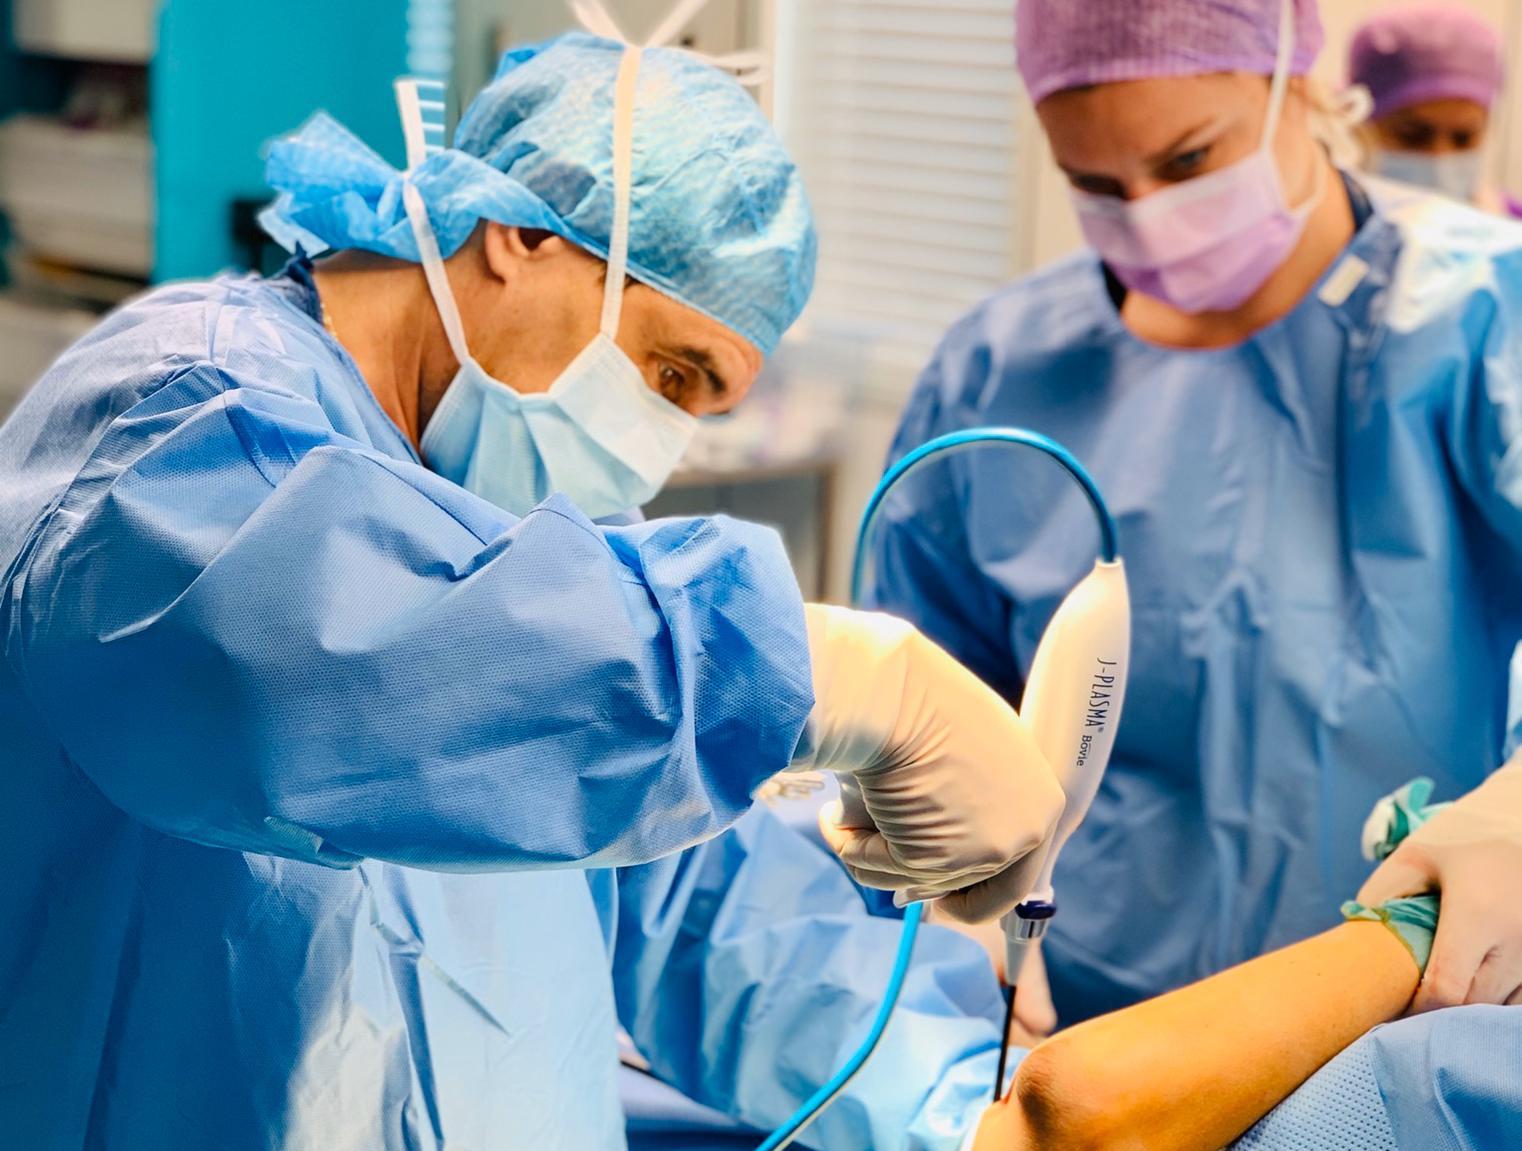 Intimate surgery : Mons Pubis Reduction - Dr Laurent Benadiba